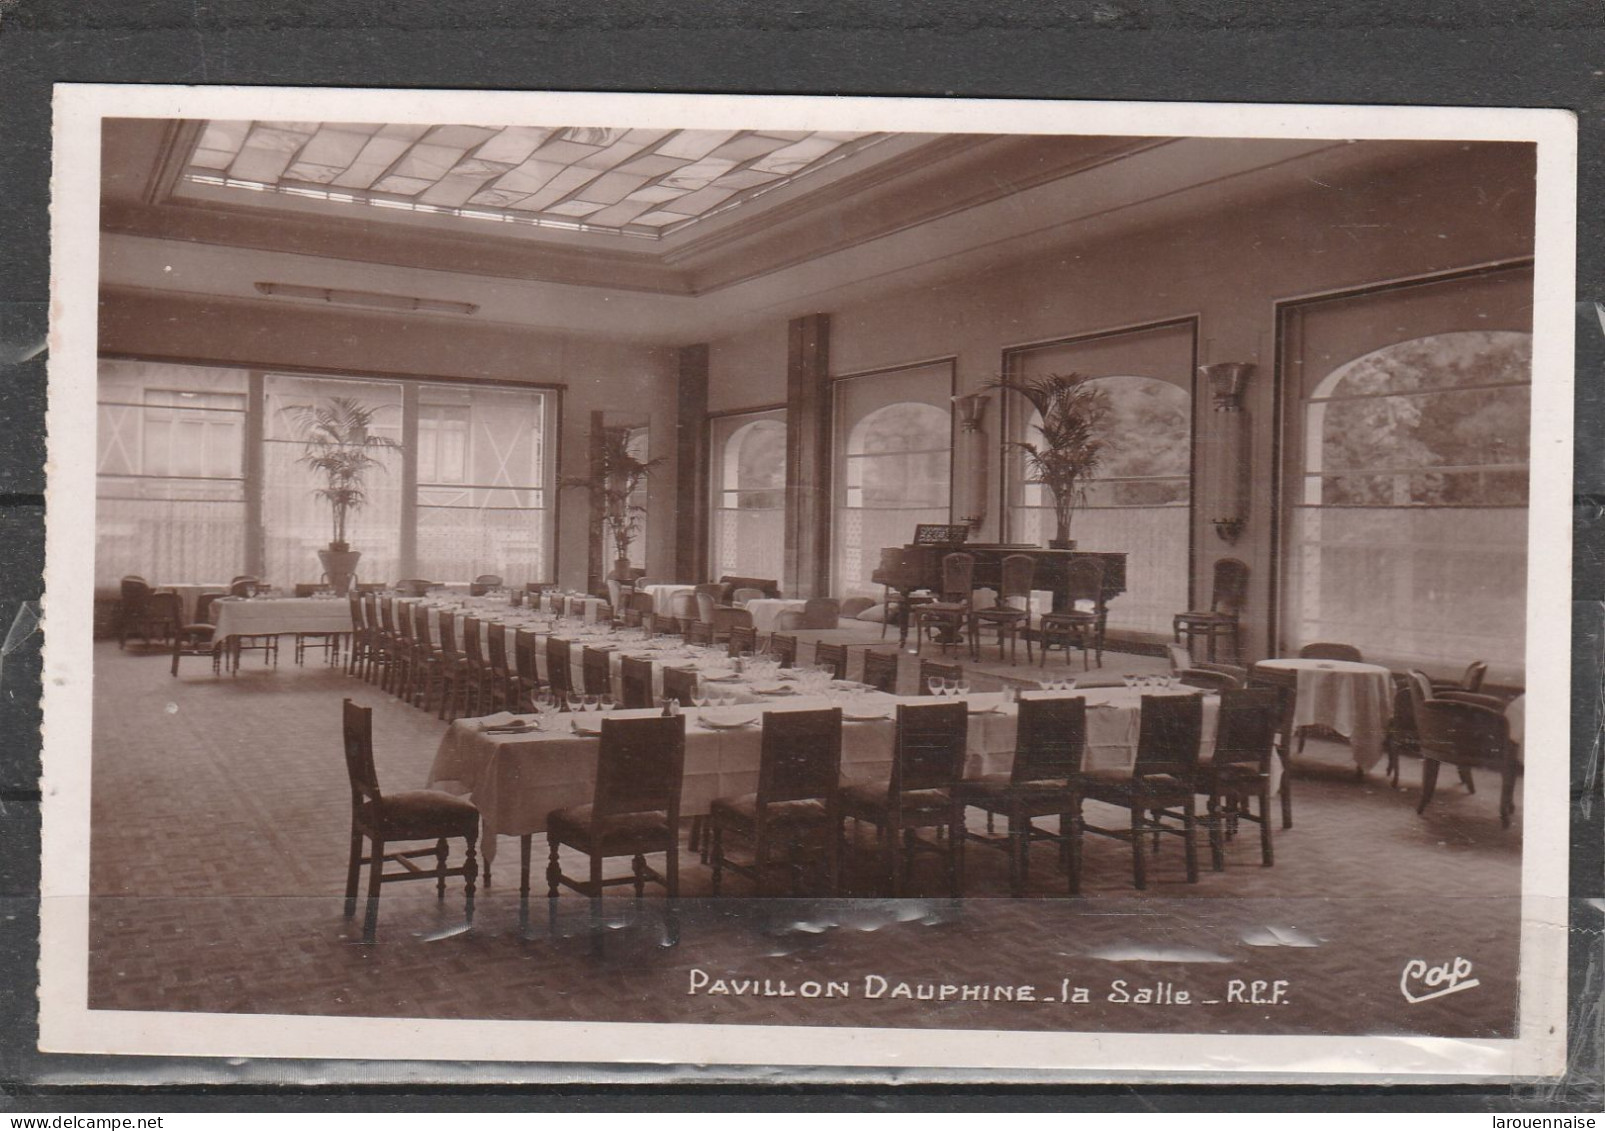 75016 - PARIS - Pavillon Dauphine - La Salle - R.C.F. - Cafés, Hôtels, Restaurants